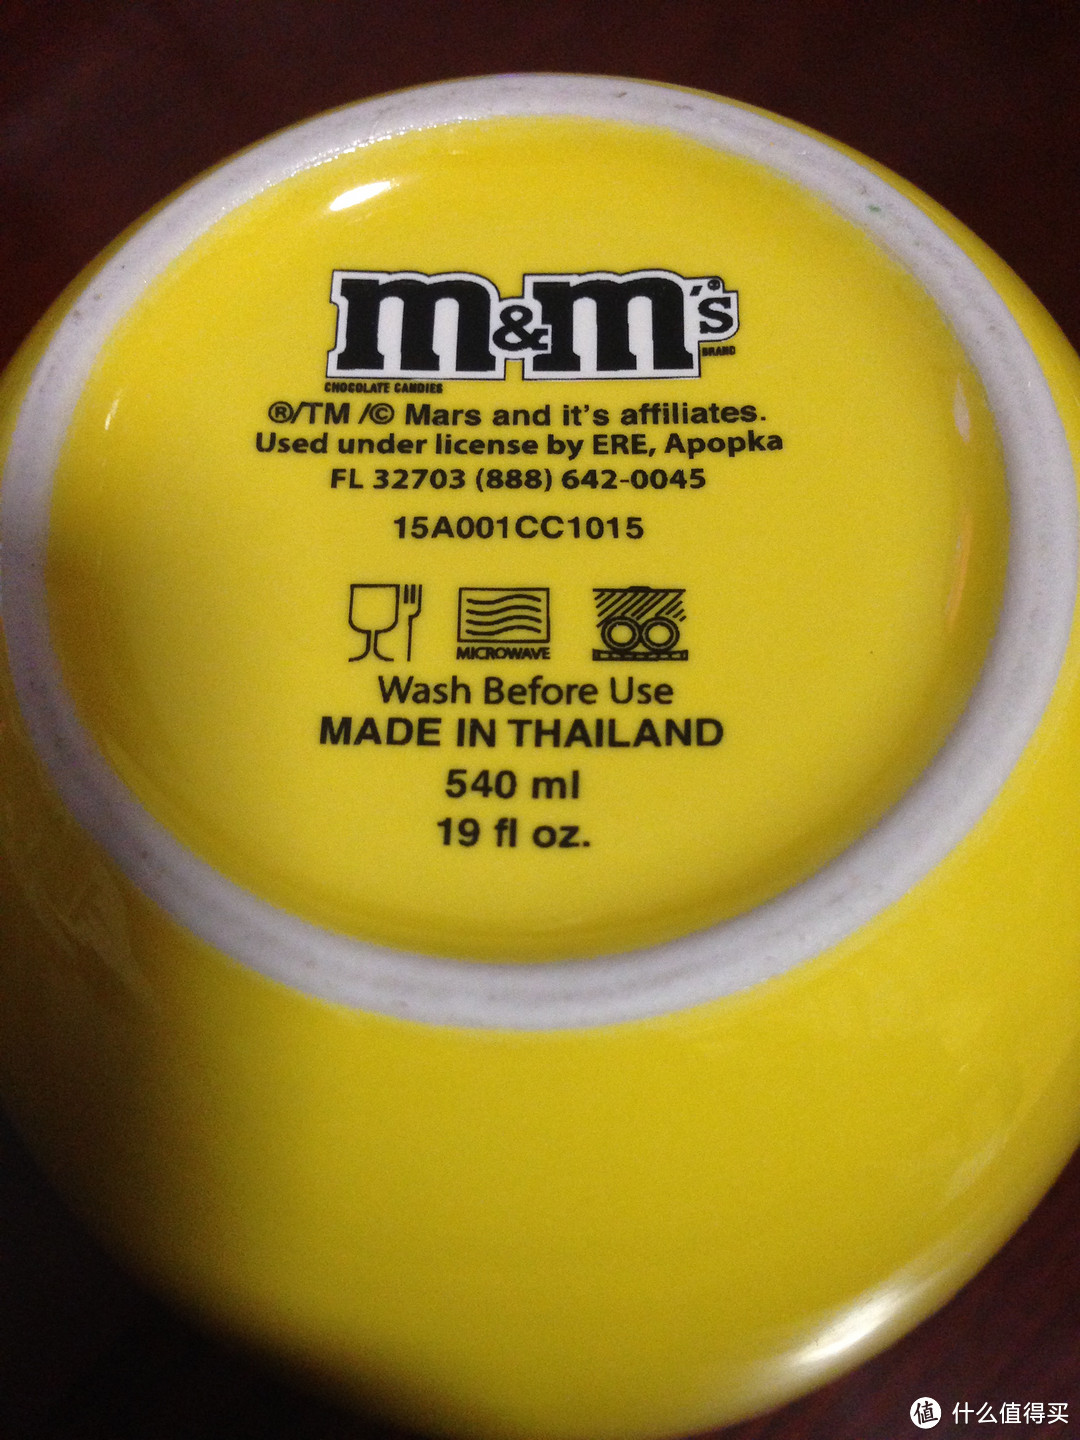 #本站首晒# 快到我碗里来 — M&M's 黄色笑脸 陶瓷水杯 咖啡杯 马克杯 晒单